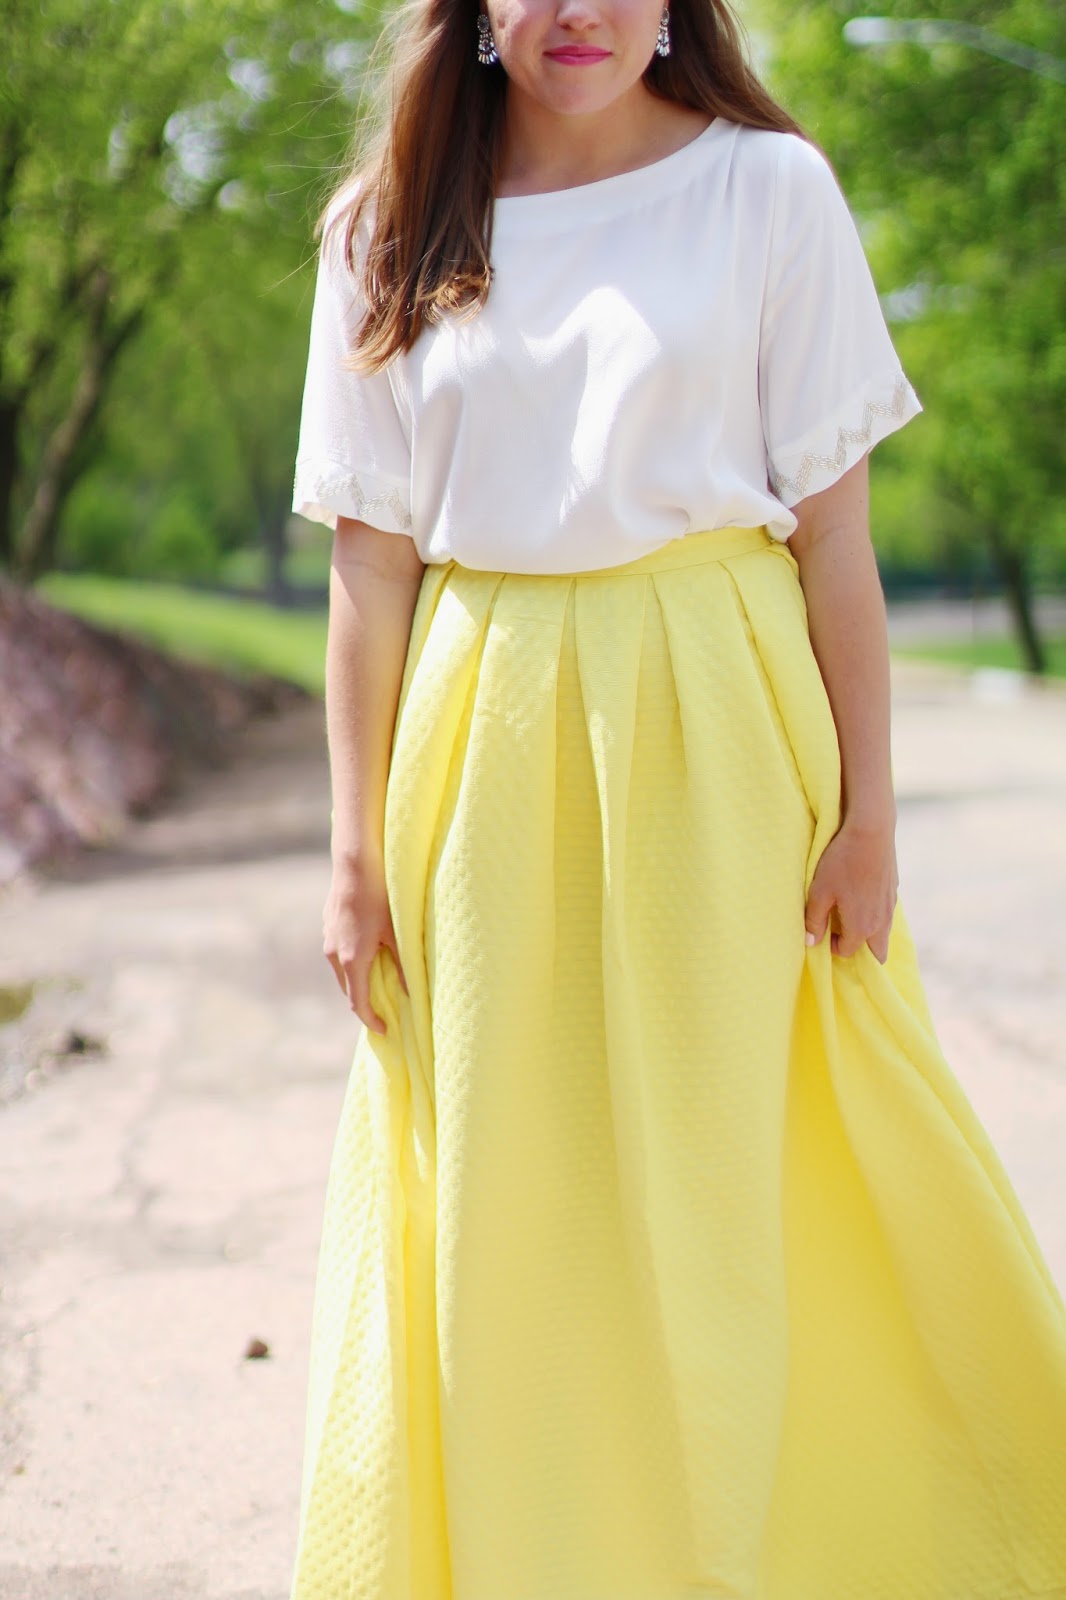 Mustard Skirt White Top | vlr.eng.br